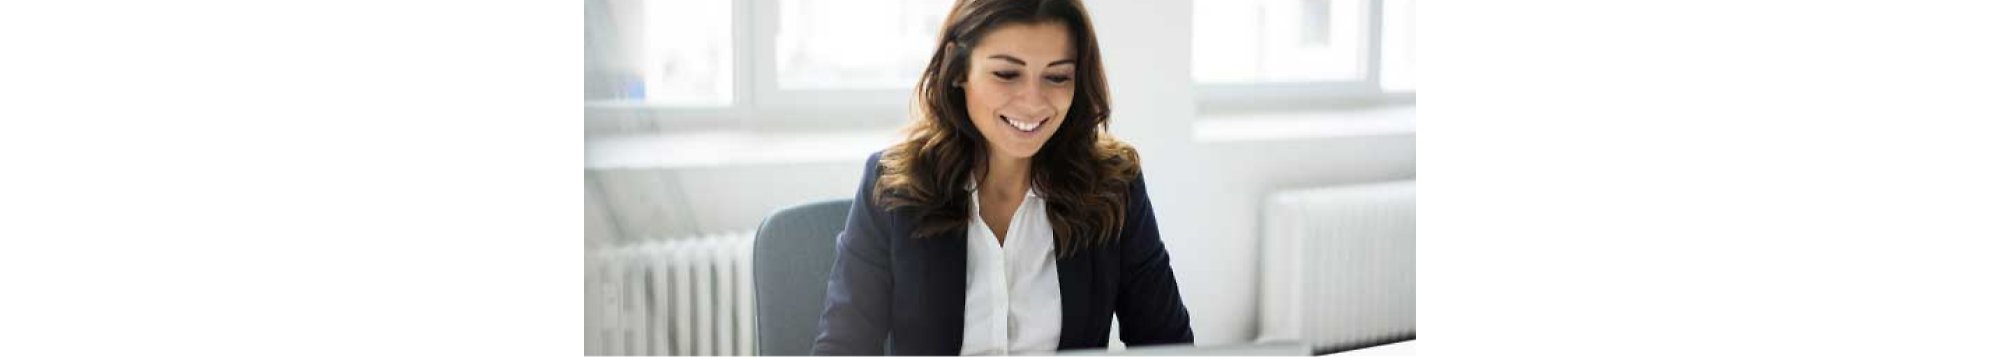 Uma mulher a sorrir sentada num escritório